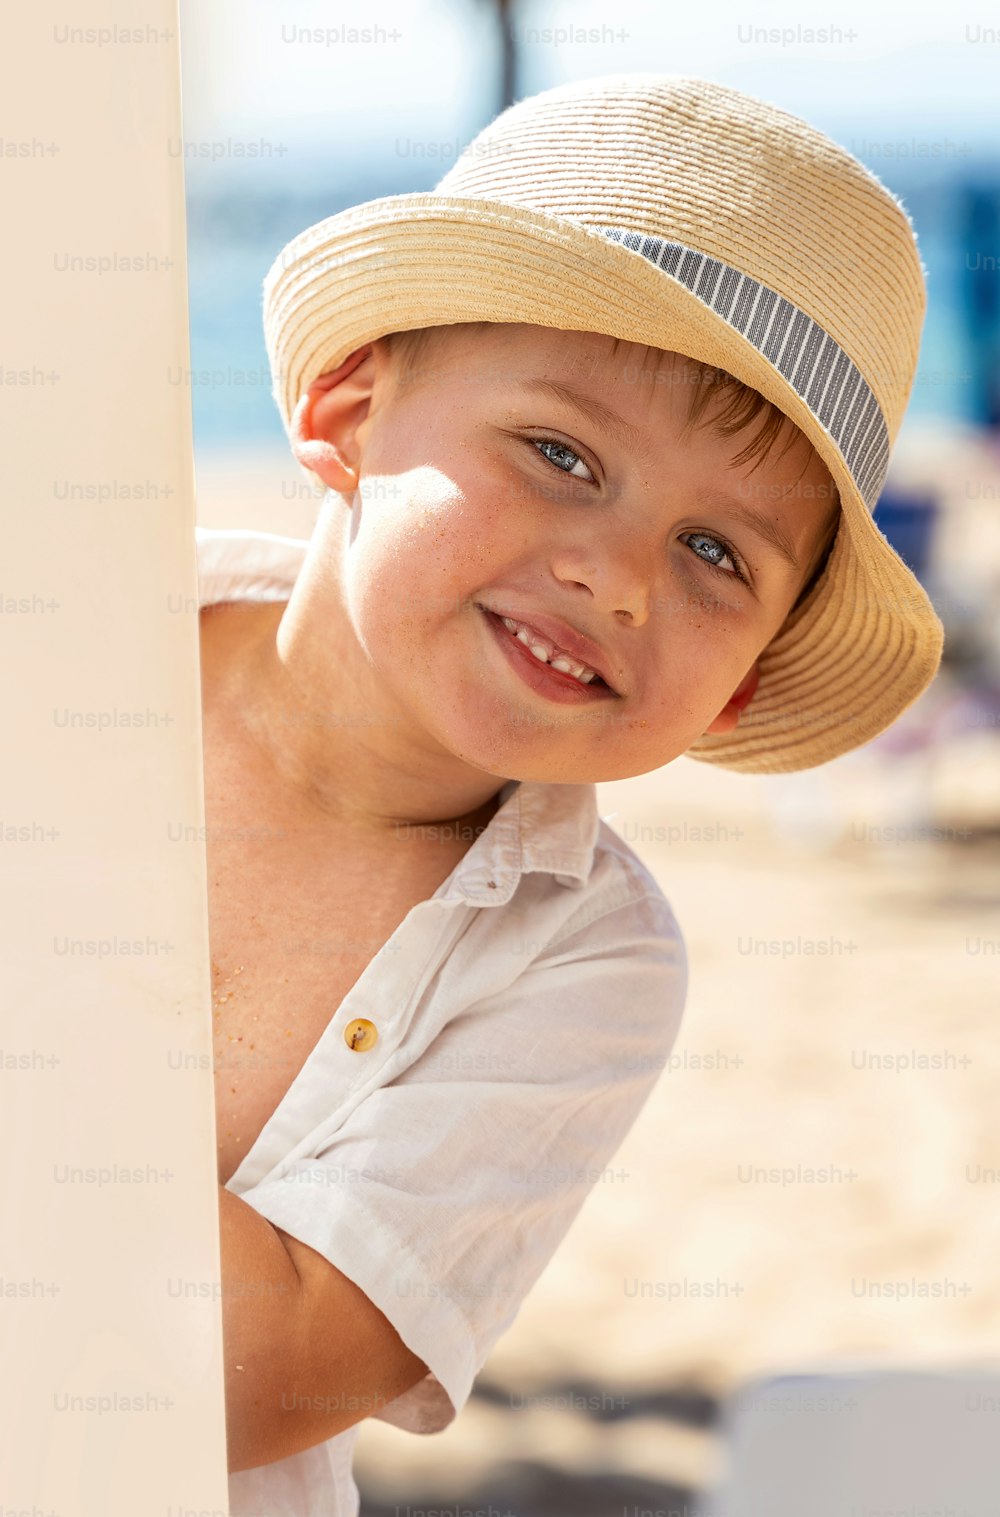 Garotinho sorridente de chapéu brincando na praia tropical arenosa. Vibrações de verão. Muito espaço de cópia.